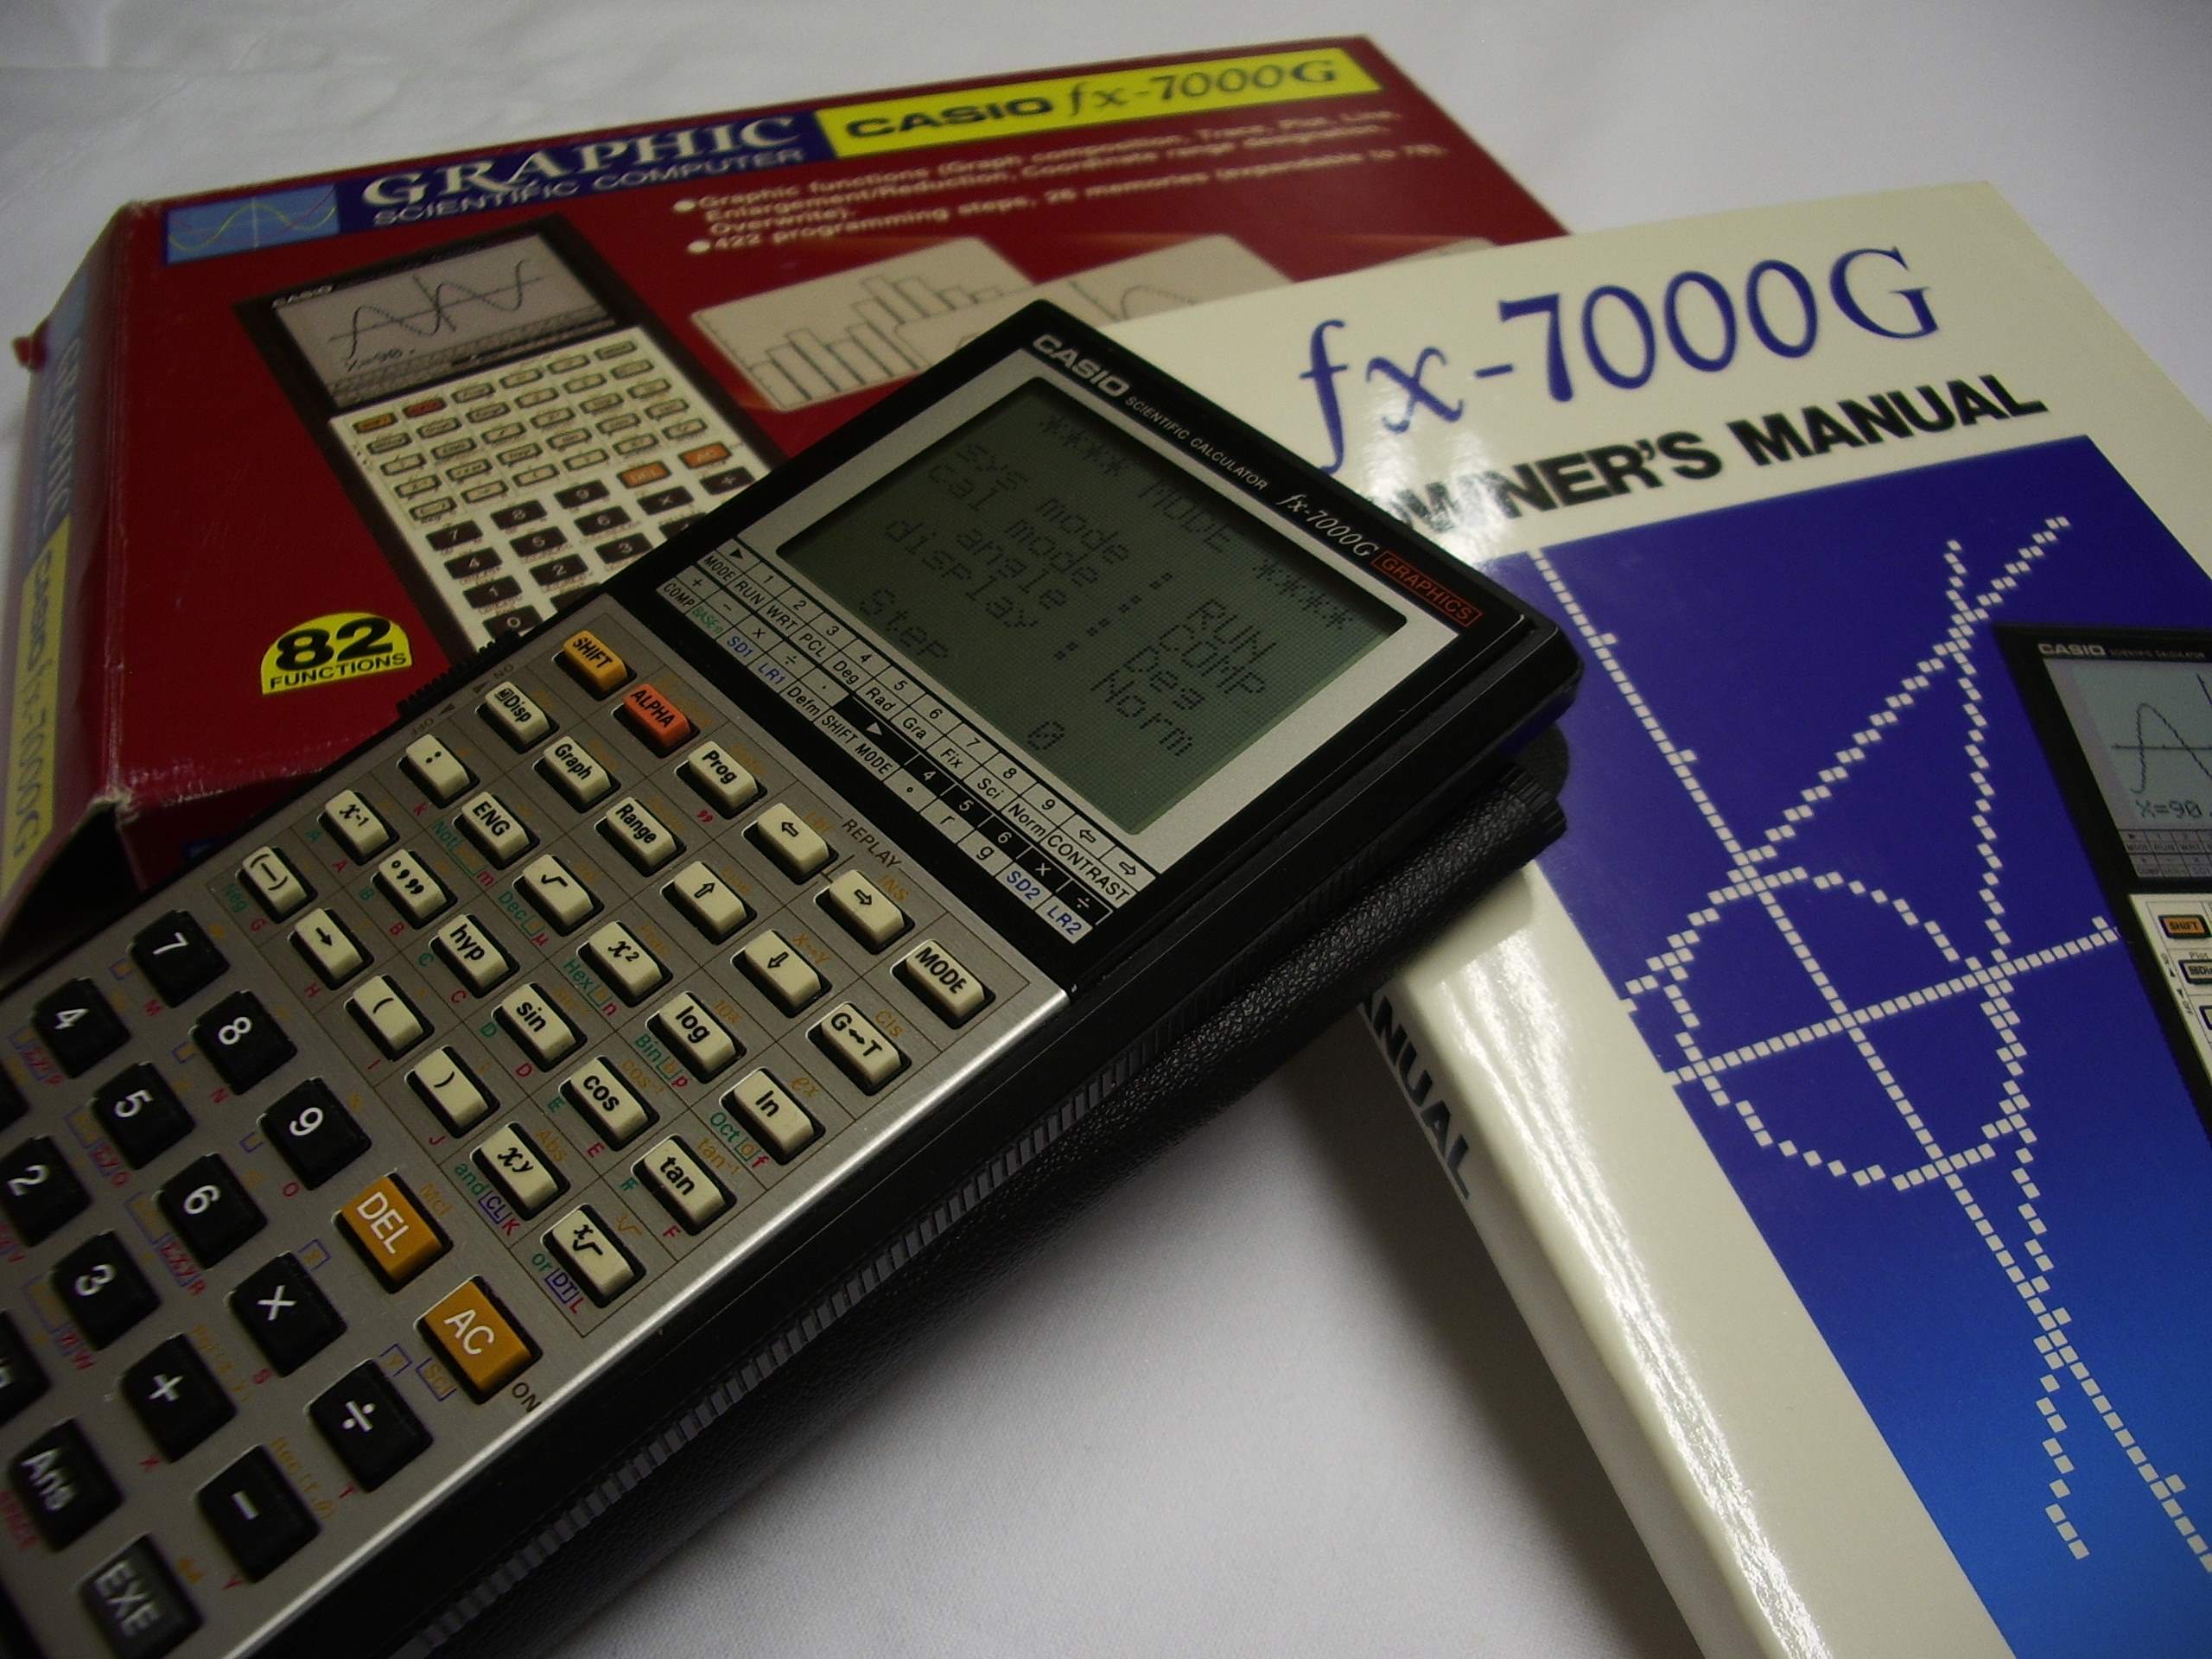 世界第一款面向大众销售的图形计算器卡西欧 Fx-7000G于1985年面市